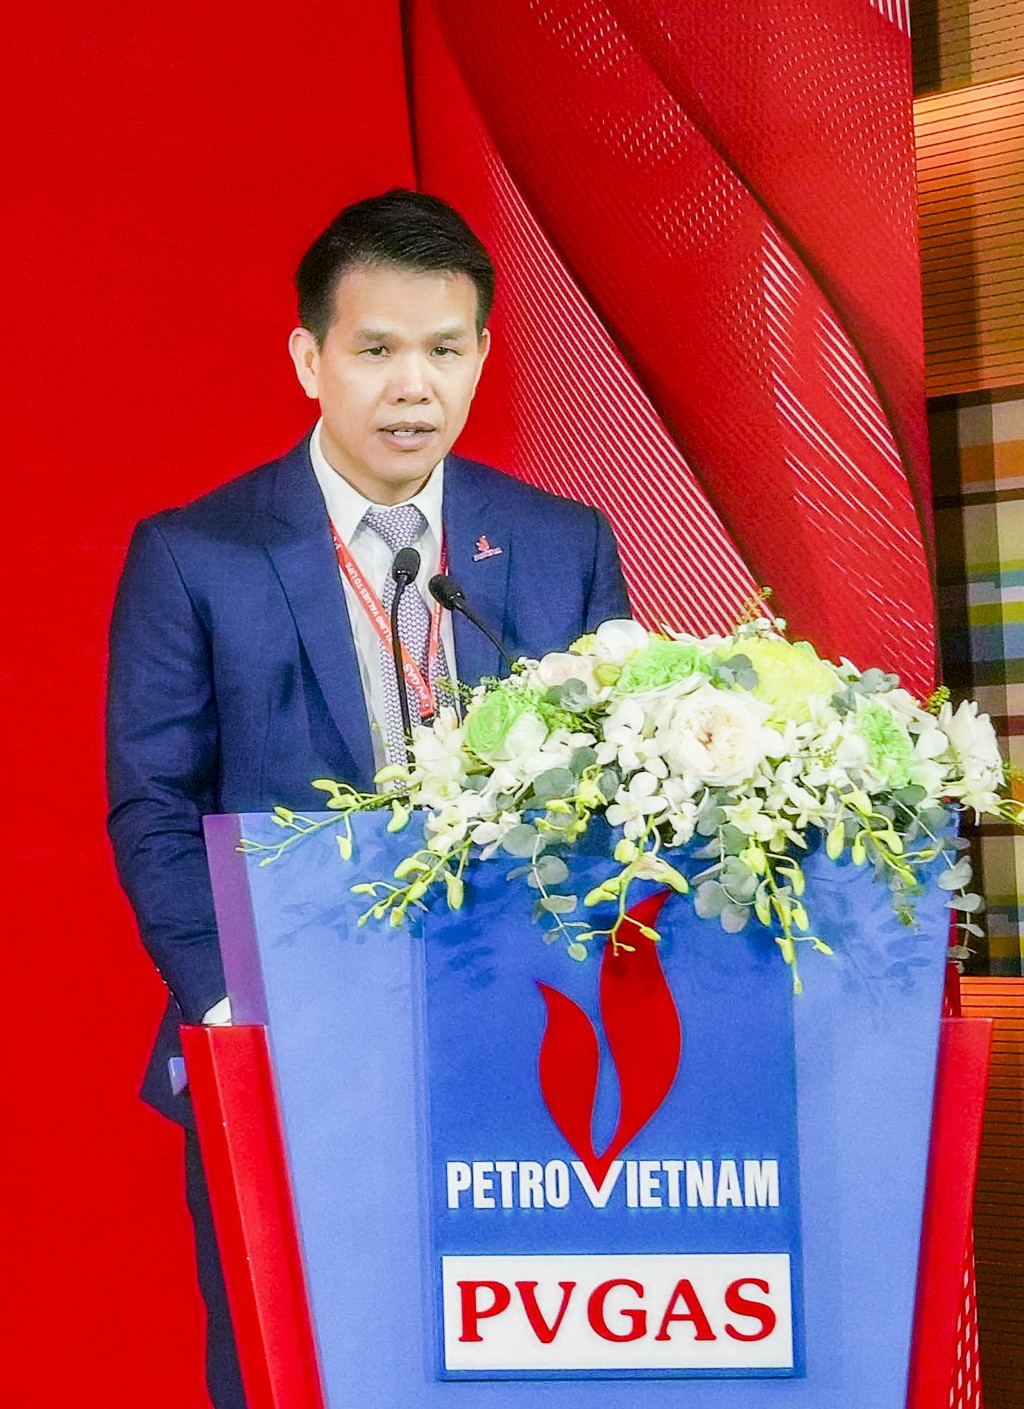 Đồng chí Phạm Văn Phong – Phó Bí thư Đảng ủy, Thành viên HĐQT, Tổng giám đốc PV GAS cam kết phát huy tinh thần đoàn kết và sức mạnh PV GAS trên hành trình thực hiện các khát vọng phát triển doanh nghiệp